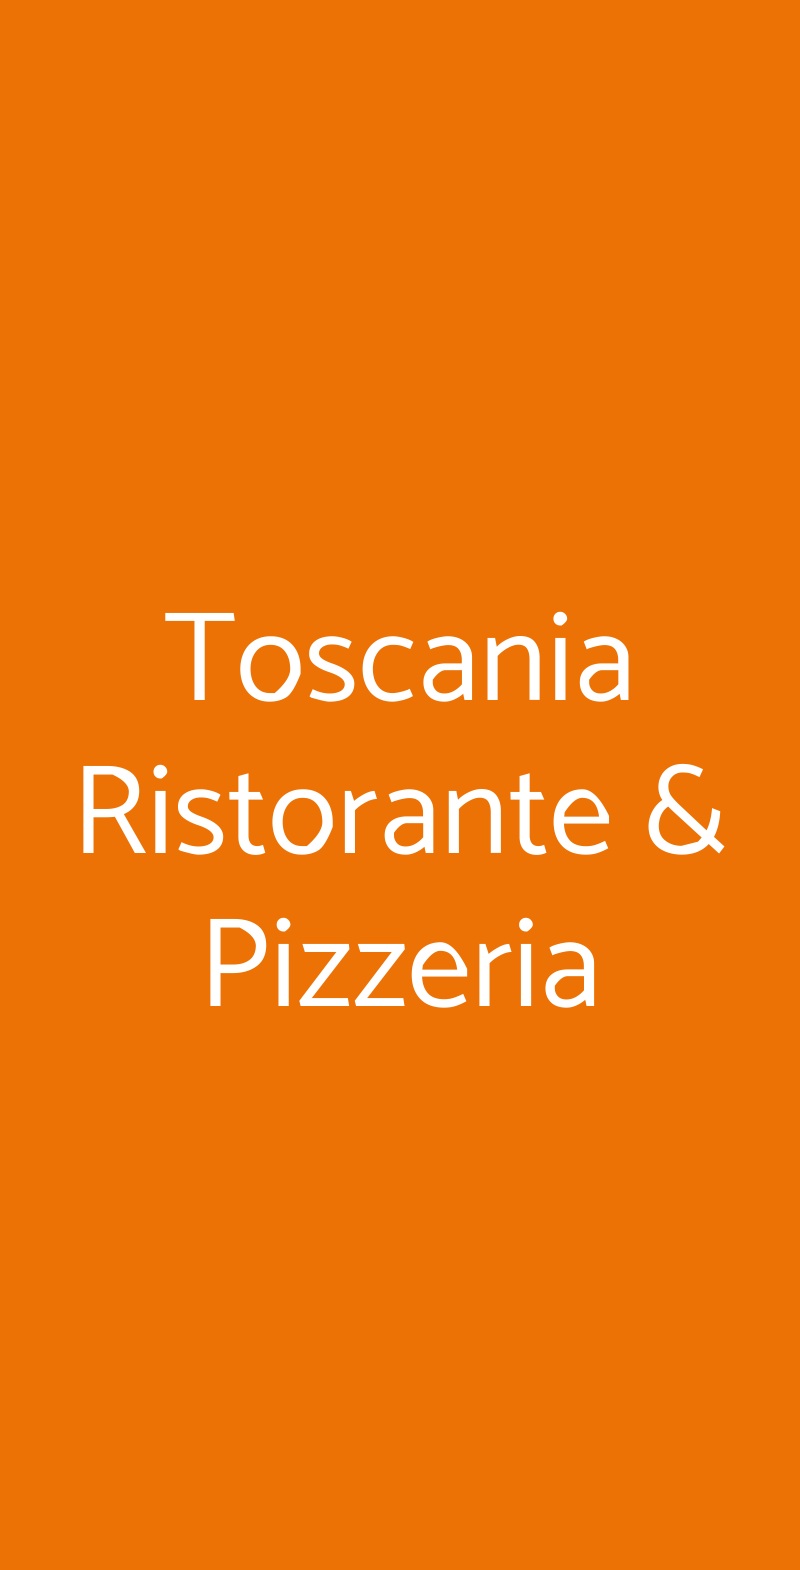 Toscania Ristorante & Pizzeria Firenze menù 1 pagina